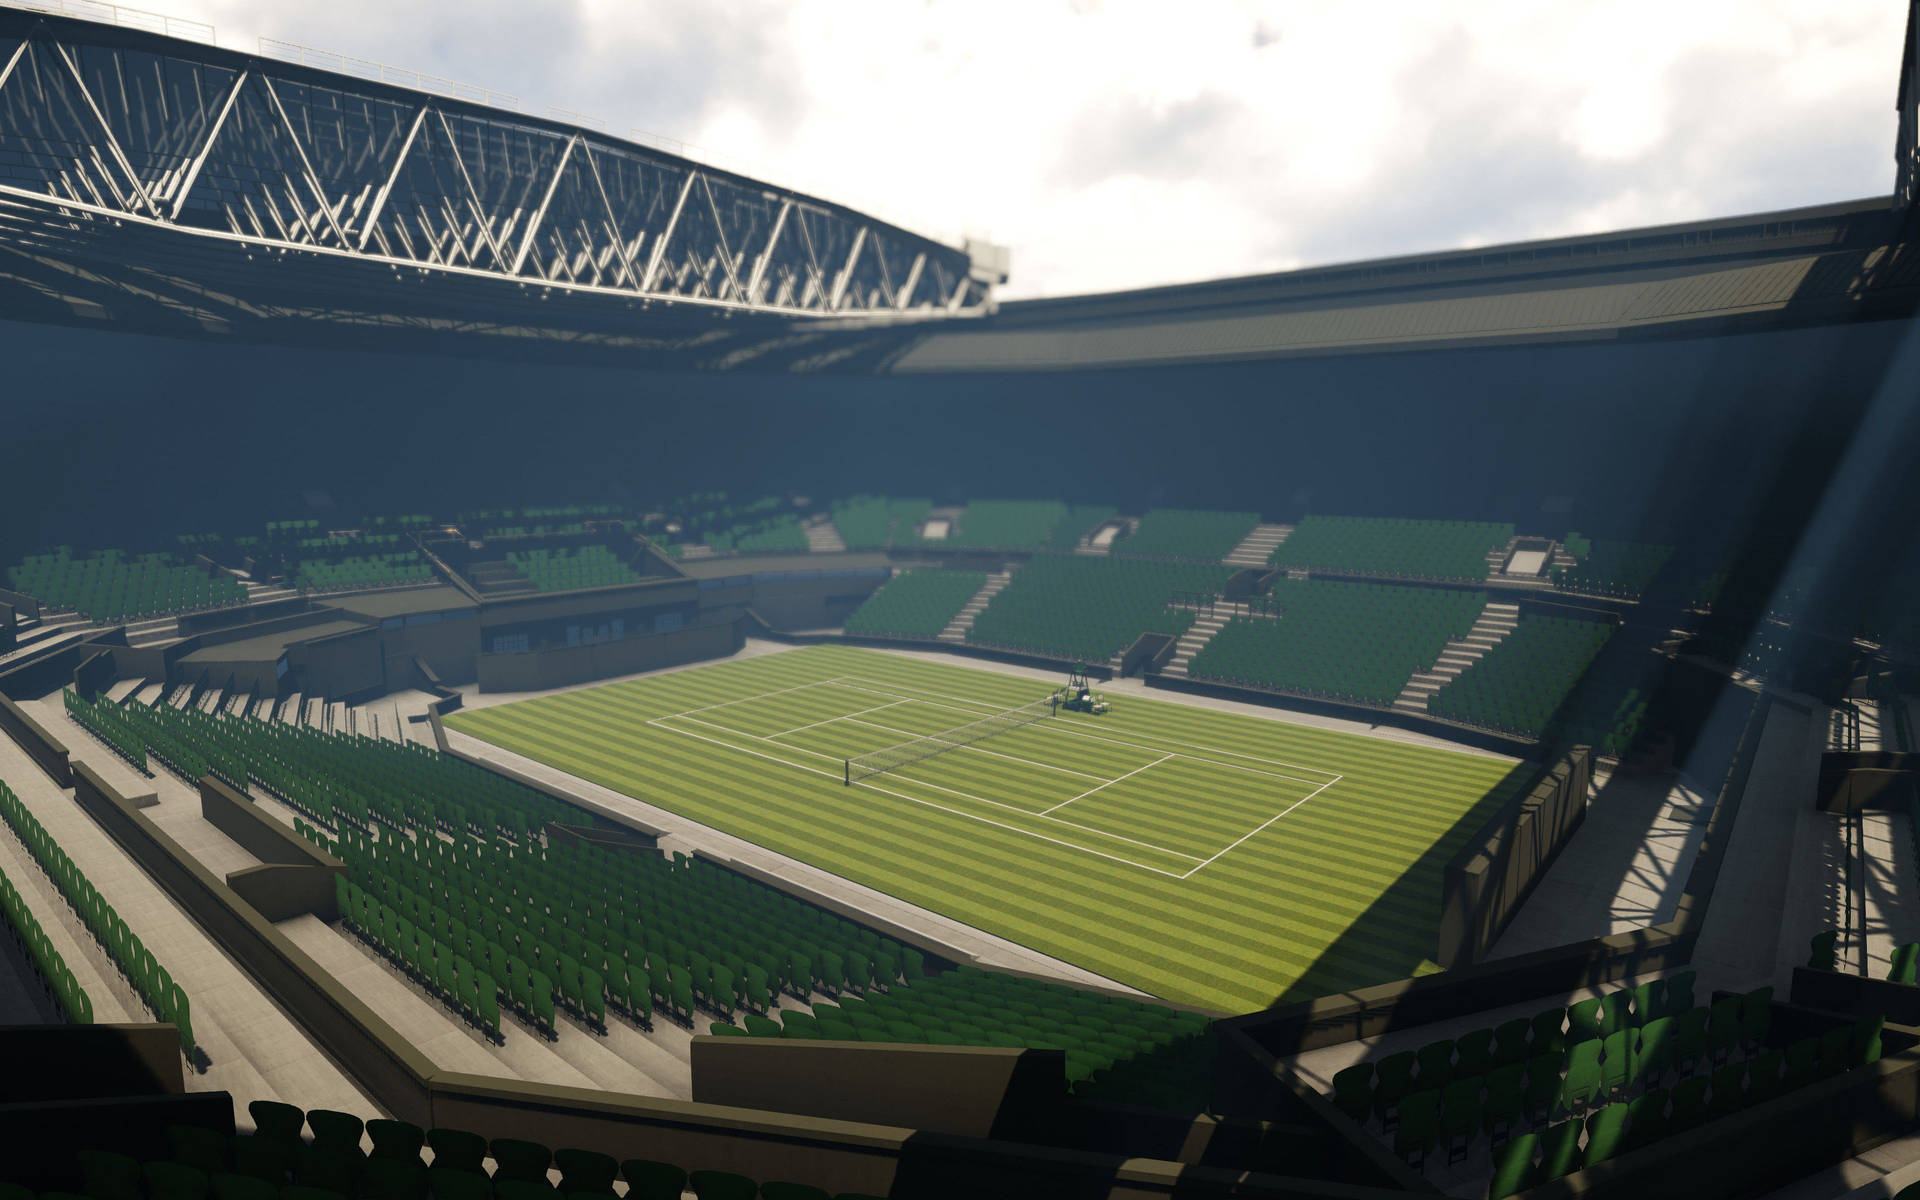 Wimbledondigital Erstelltes Stadion Wallpaper